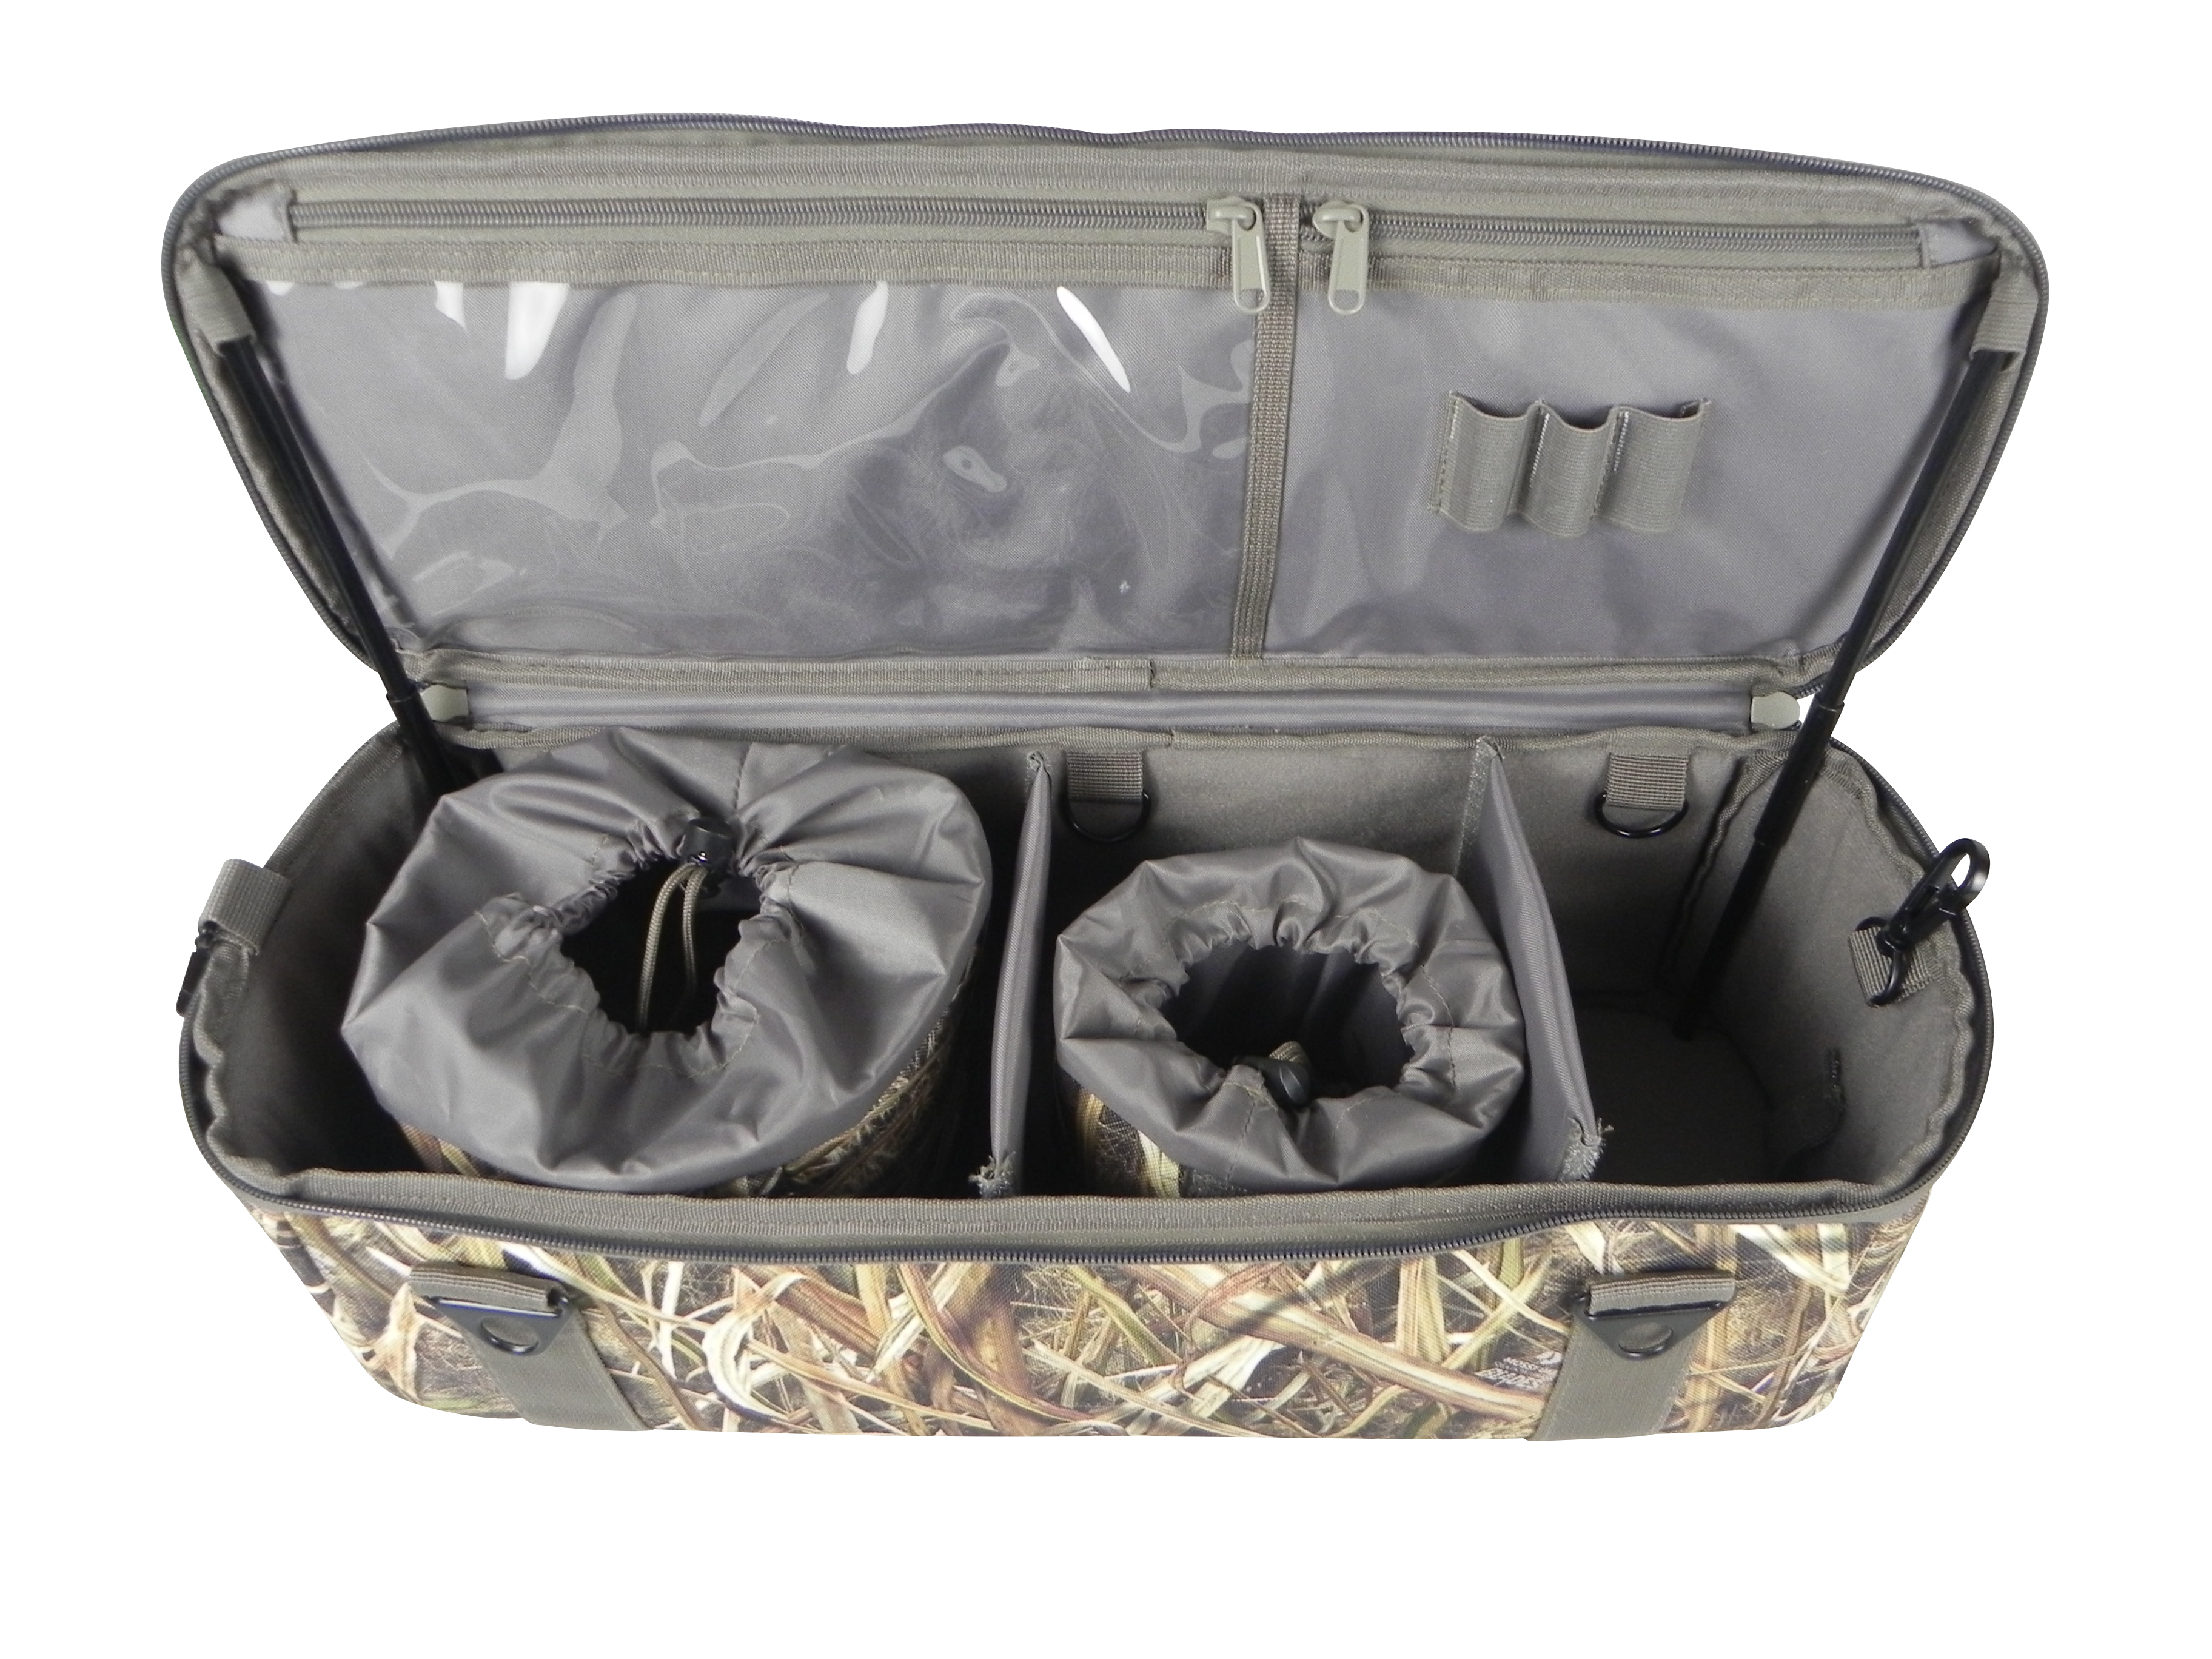 Die Jagdtasche bietet reichlich Stauraum mit flexiblen Innenfächern und Dokumententasche im Deckel.